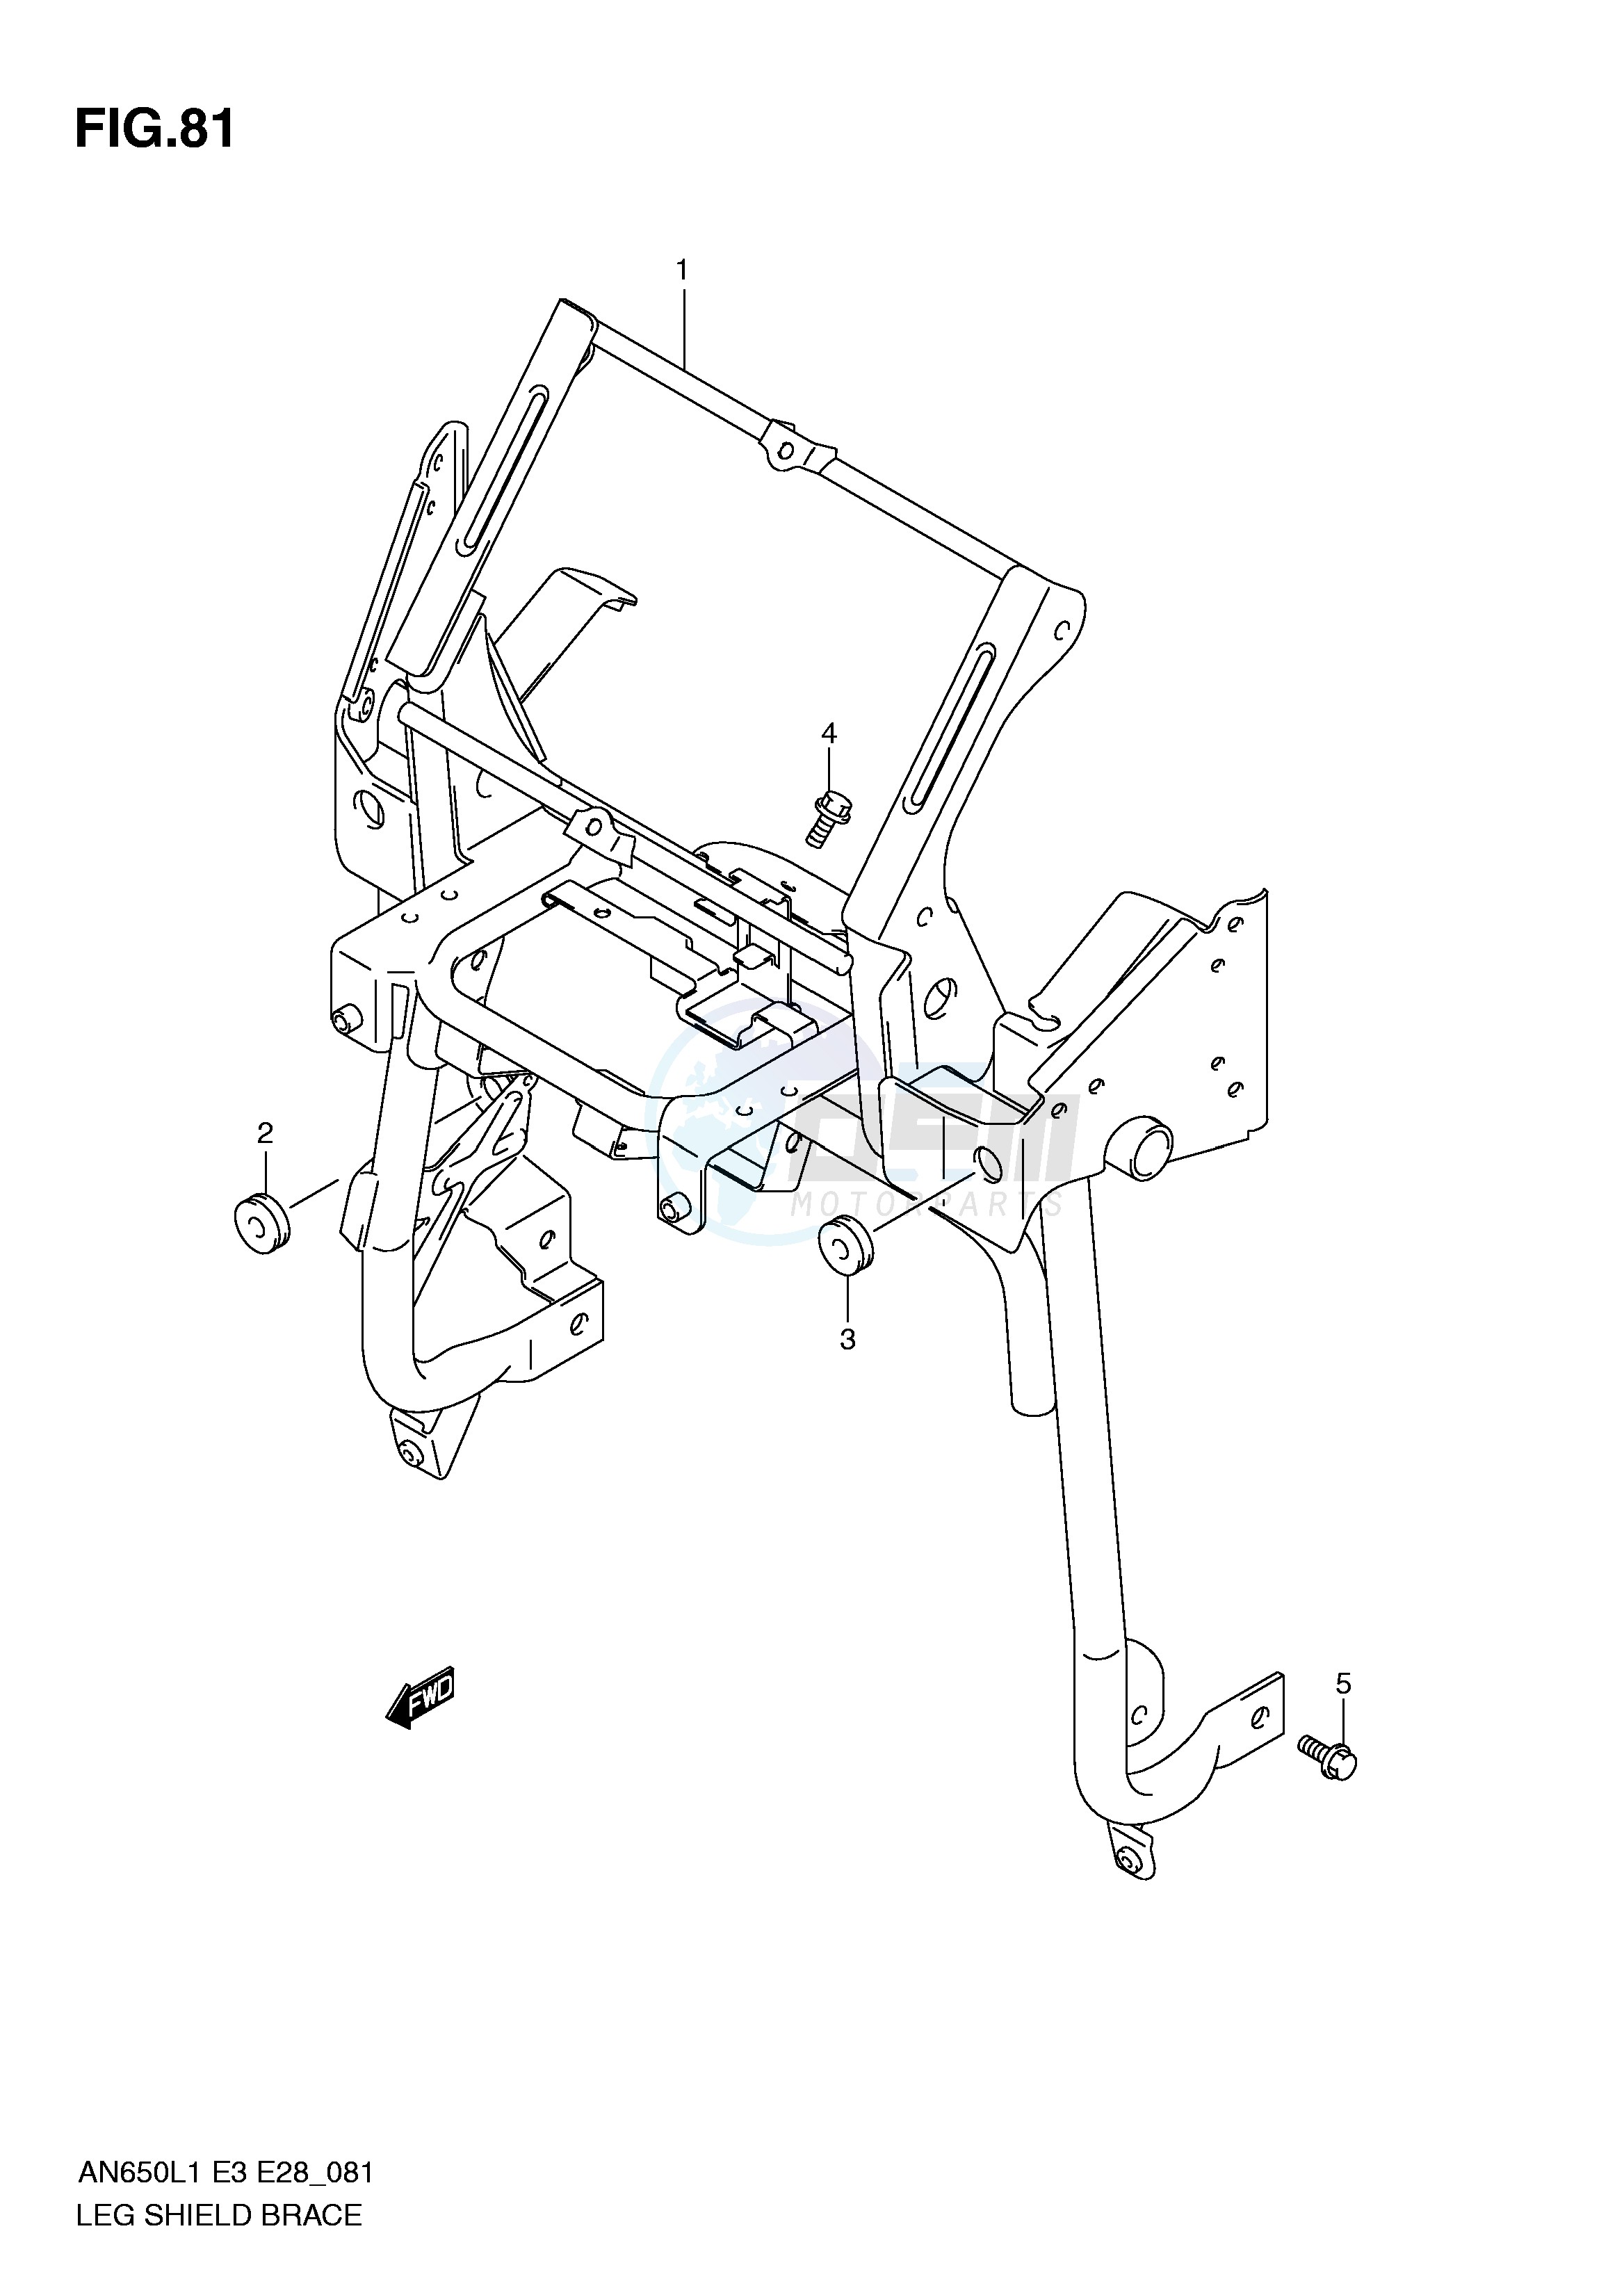 LEG SHIELD BRACE (AN650AL1 E33) blueprint